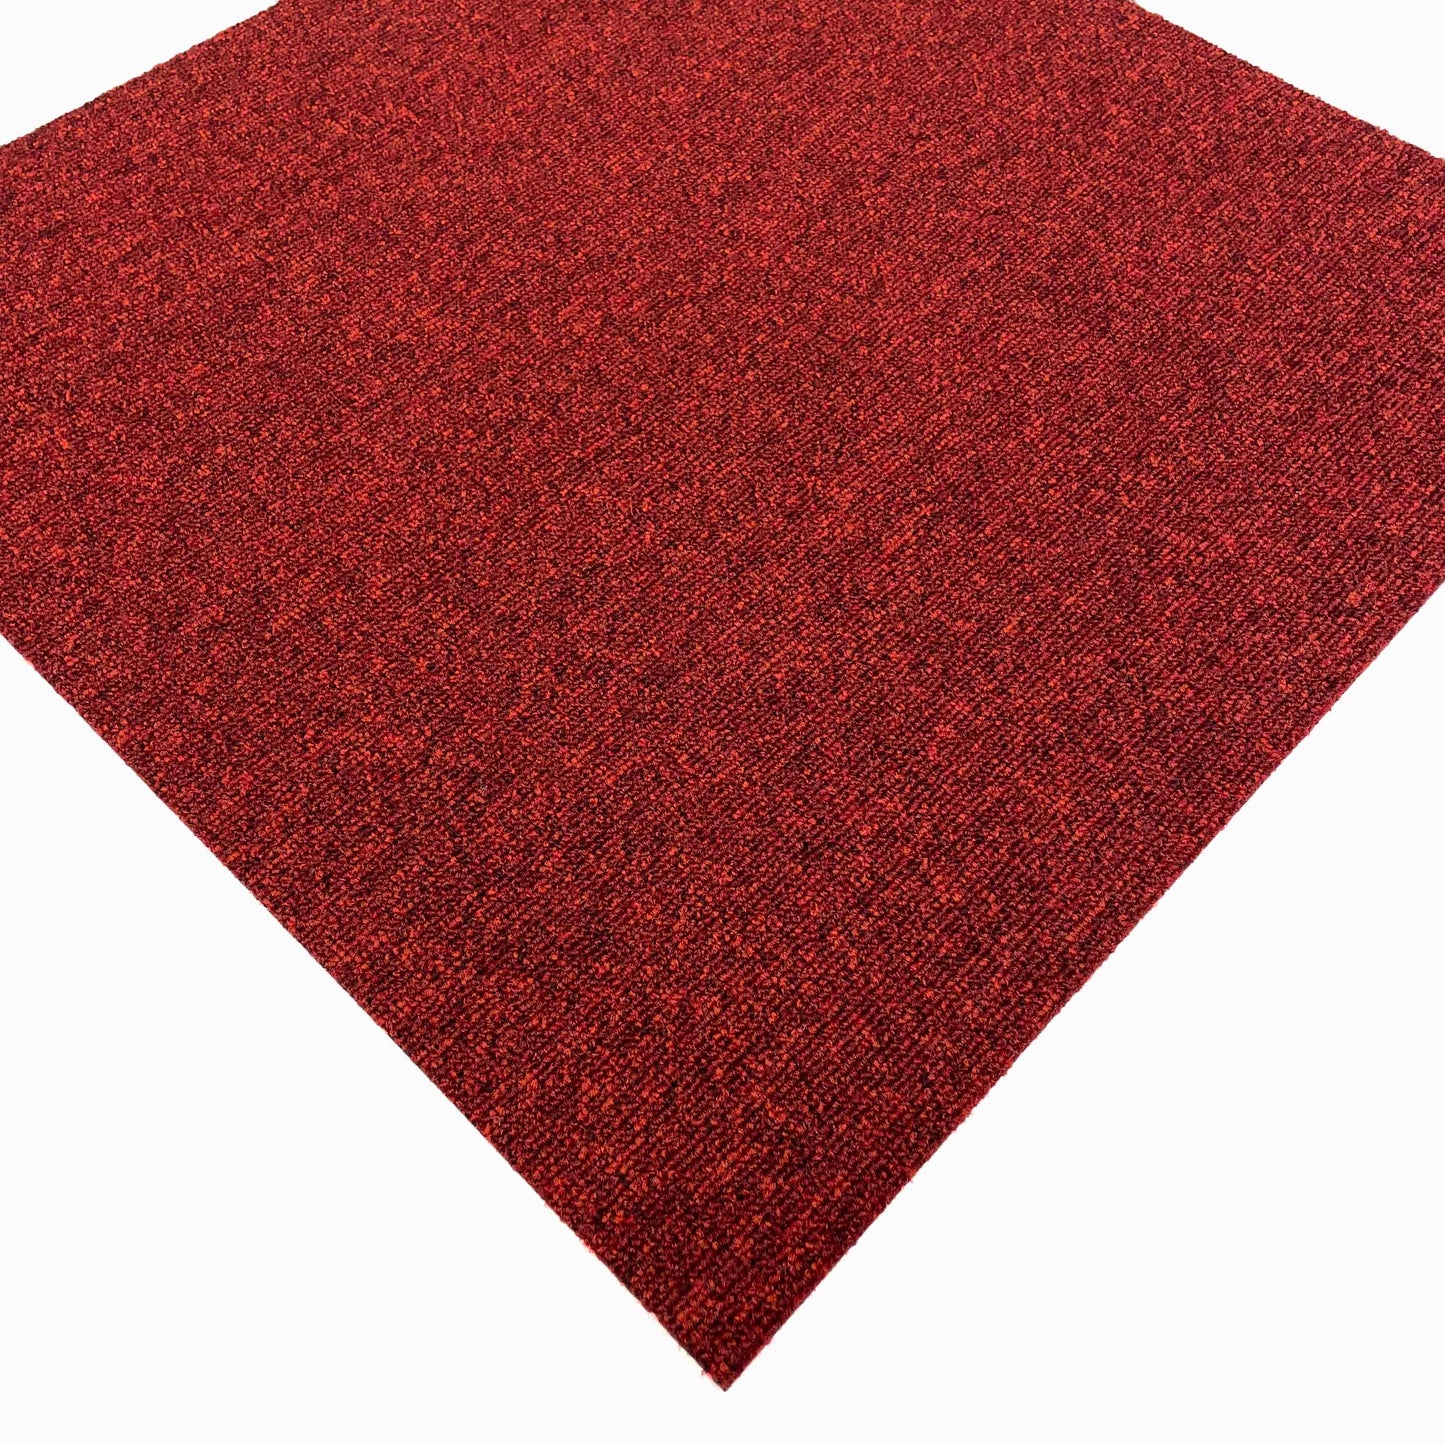 Dark Red Speckled Carpet Tiles